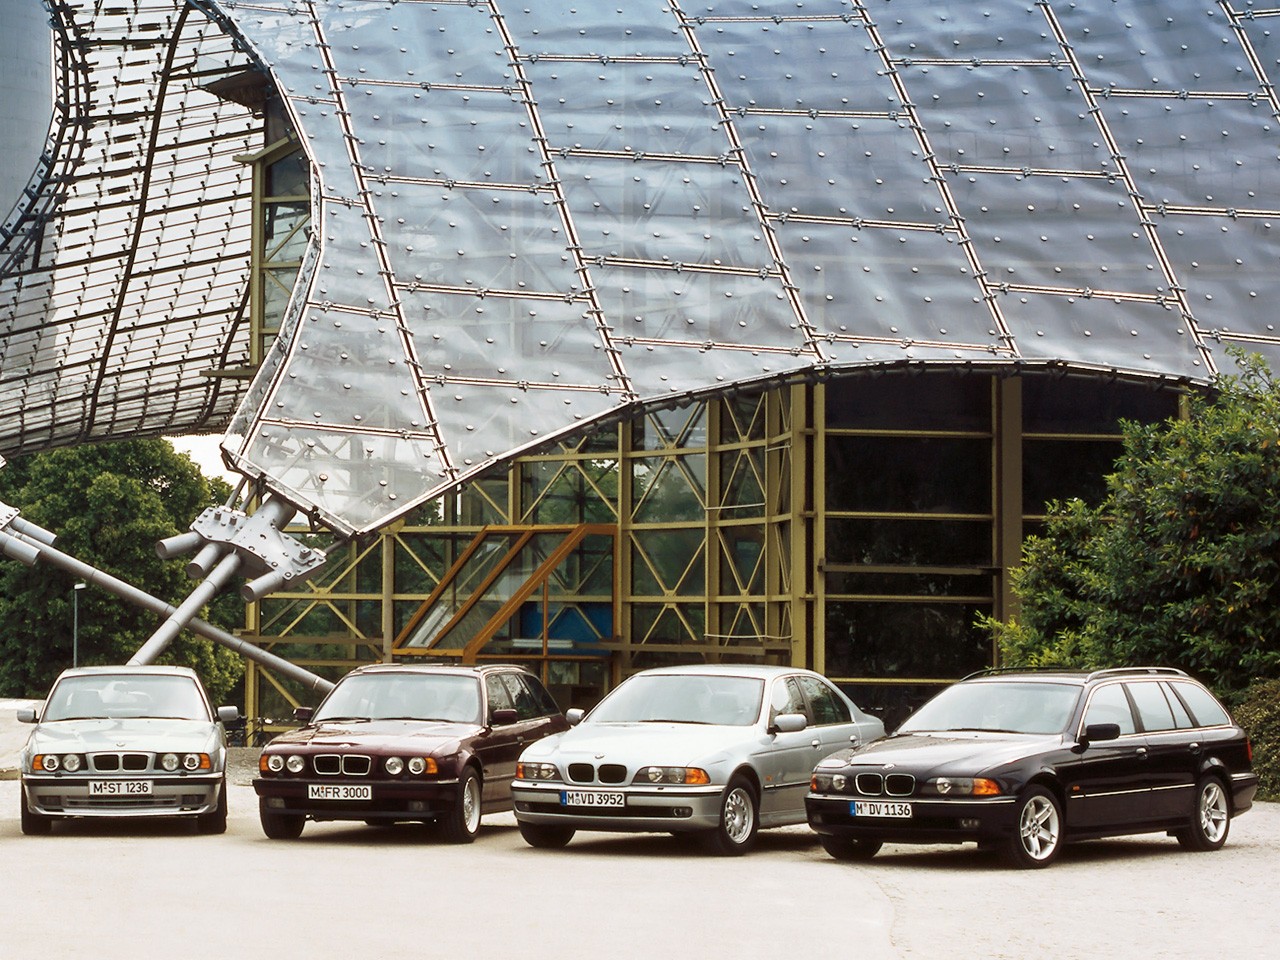 BMW 5 Серии E34 – Технические характеристики и история легендарной «тридцатьчетверки»